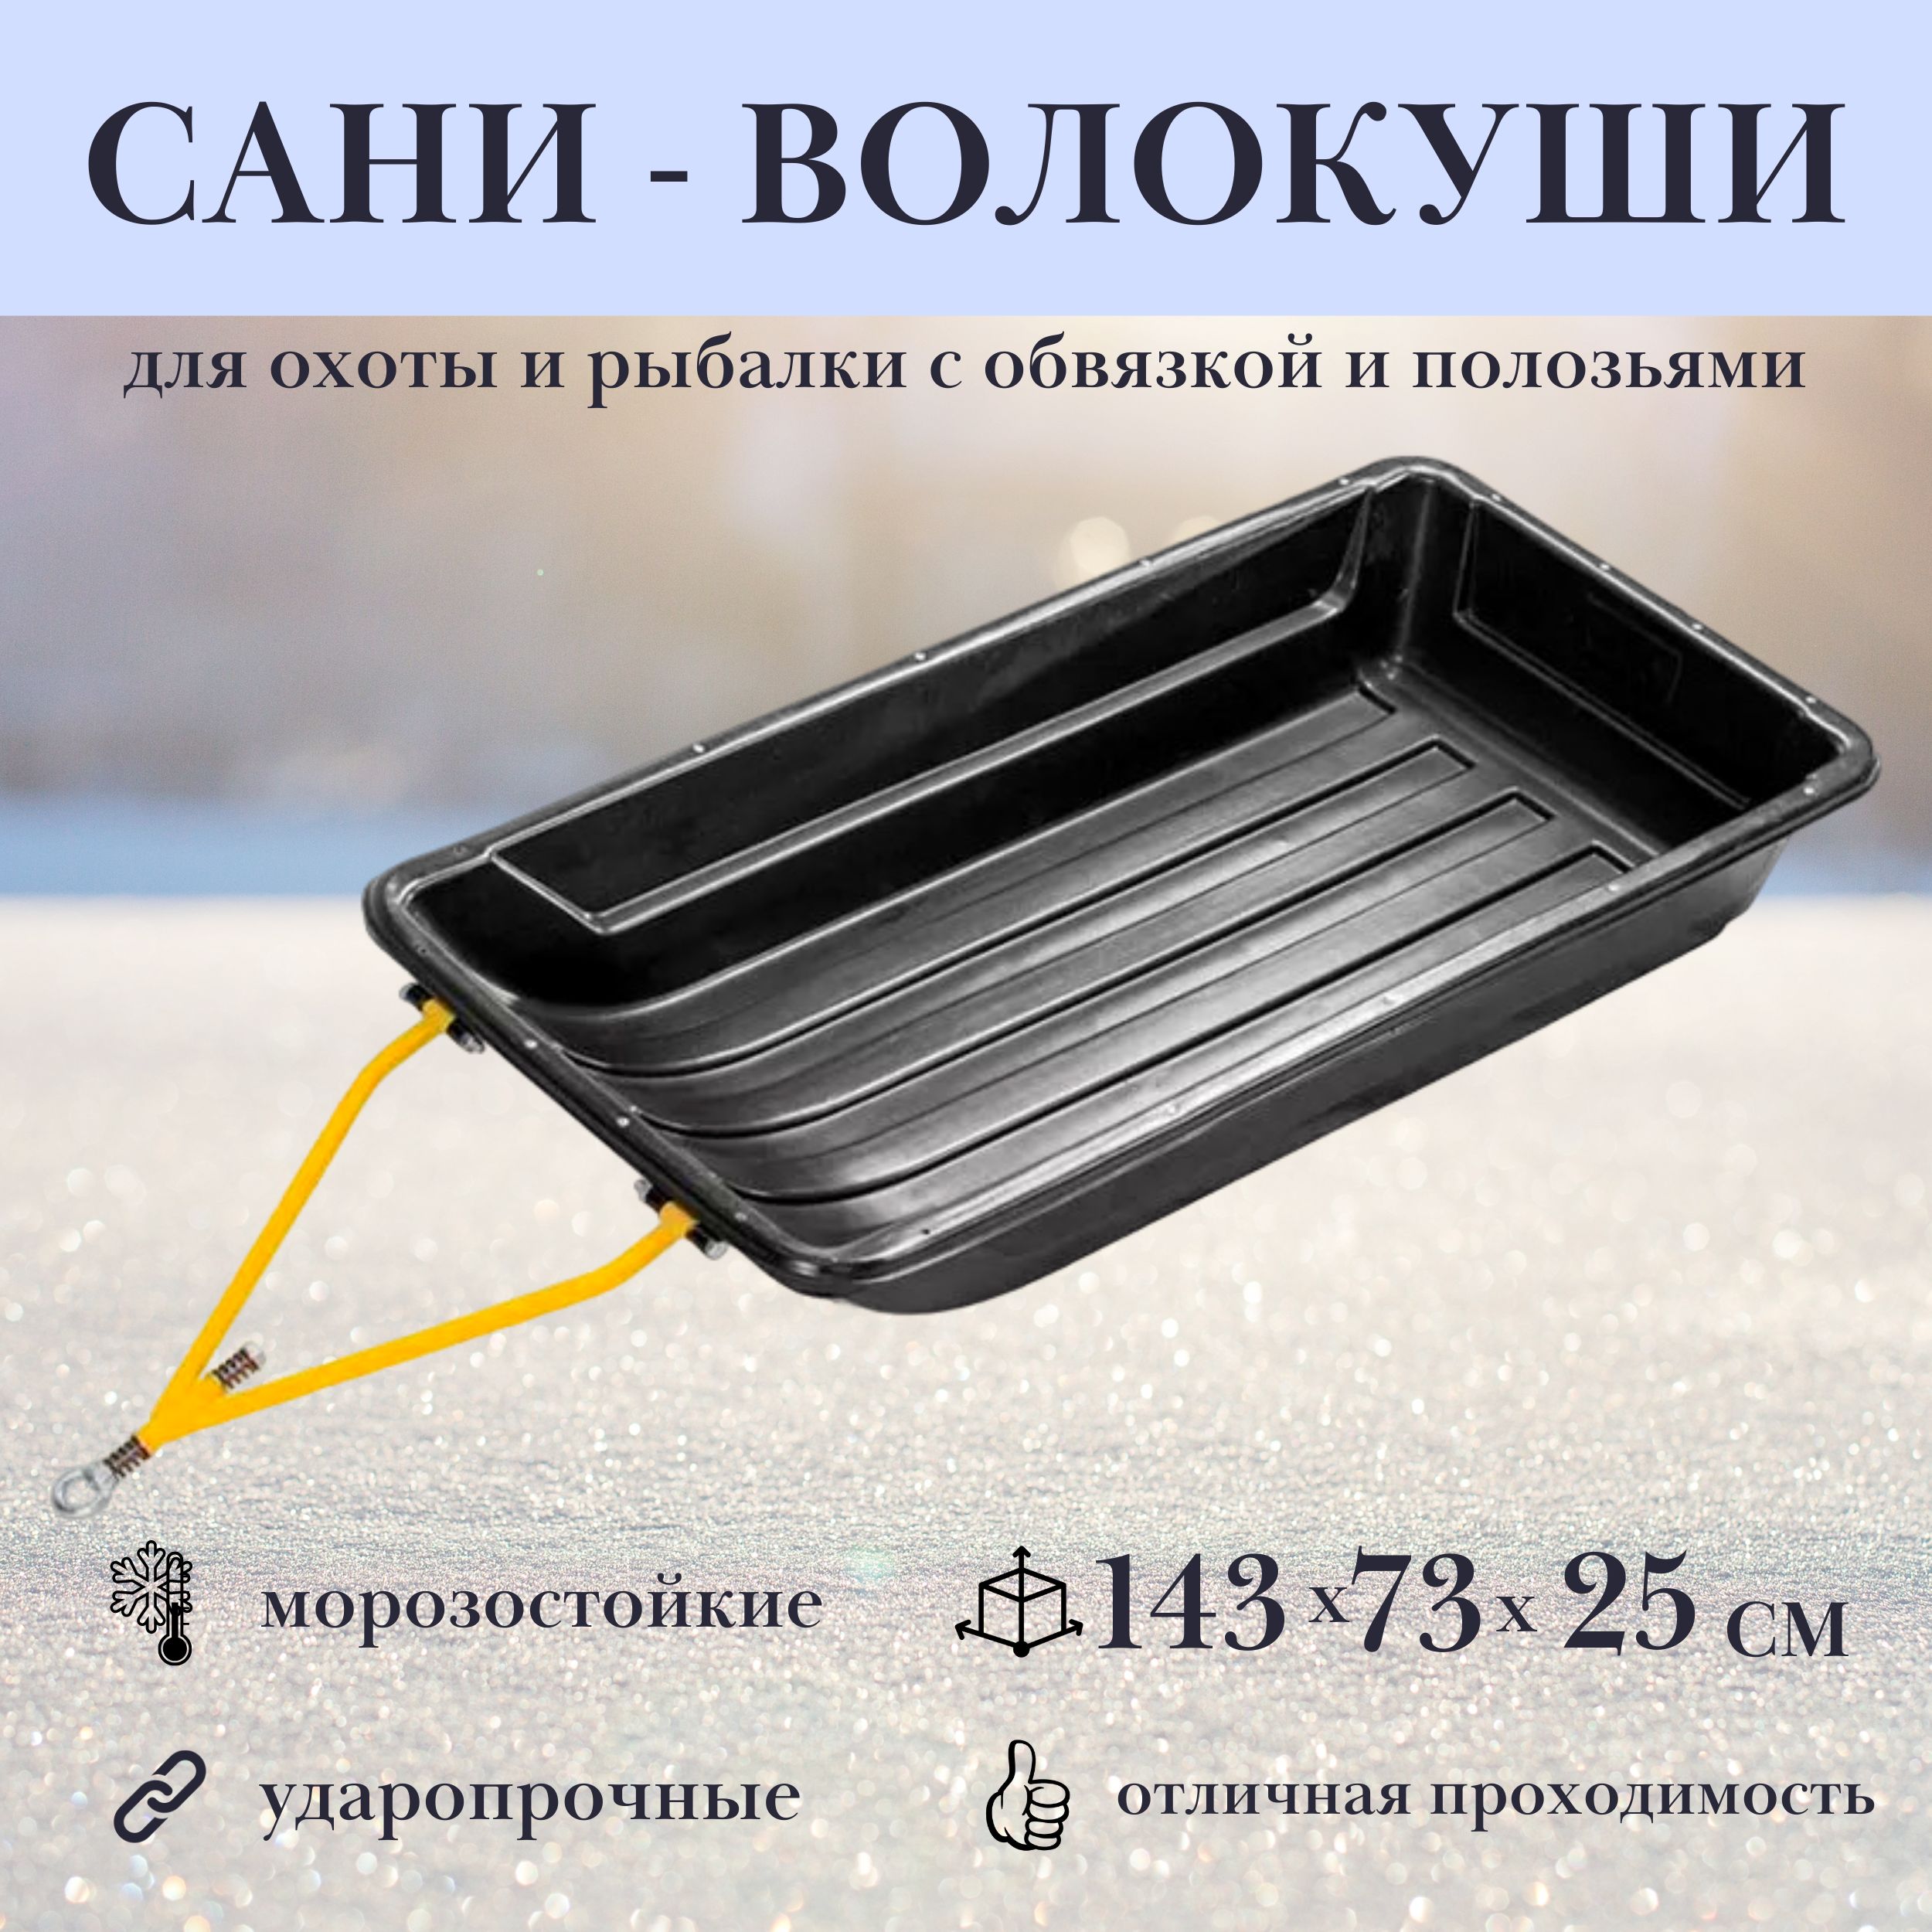 Рыболовные санки в Ижевске по выгодной цене - купить на Пульсе цен